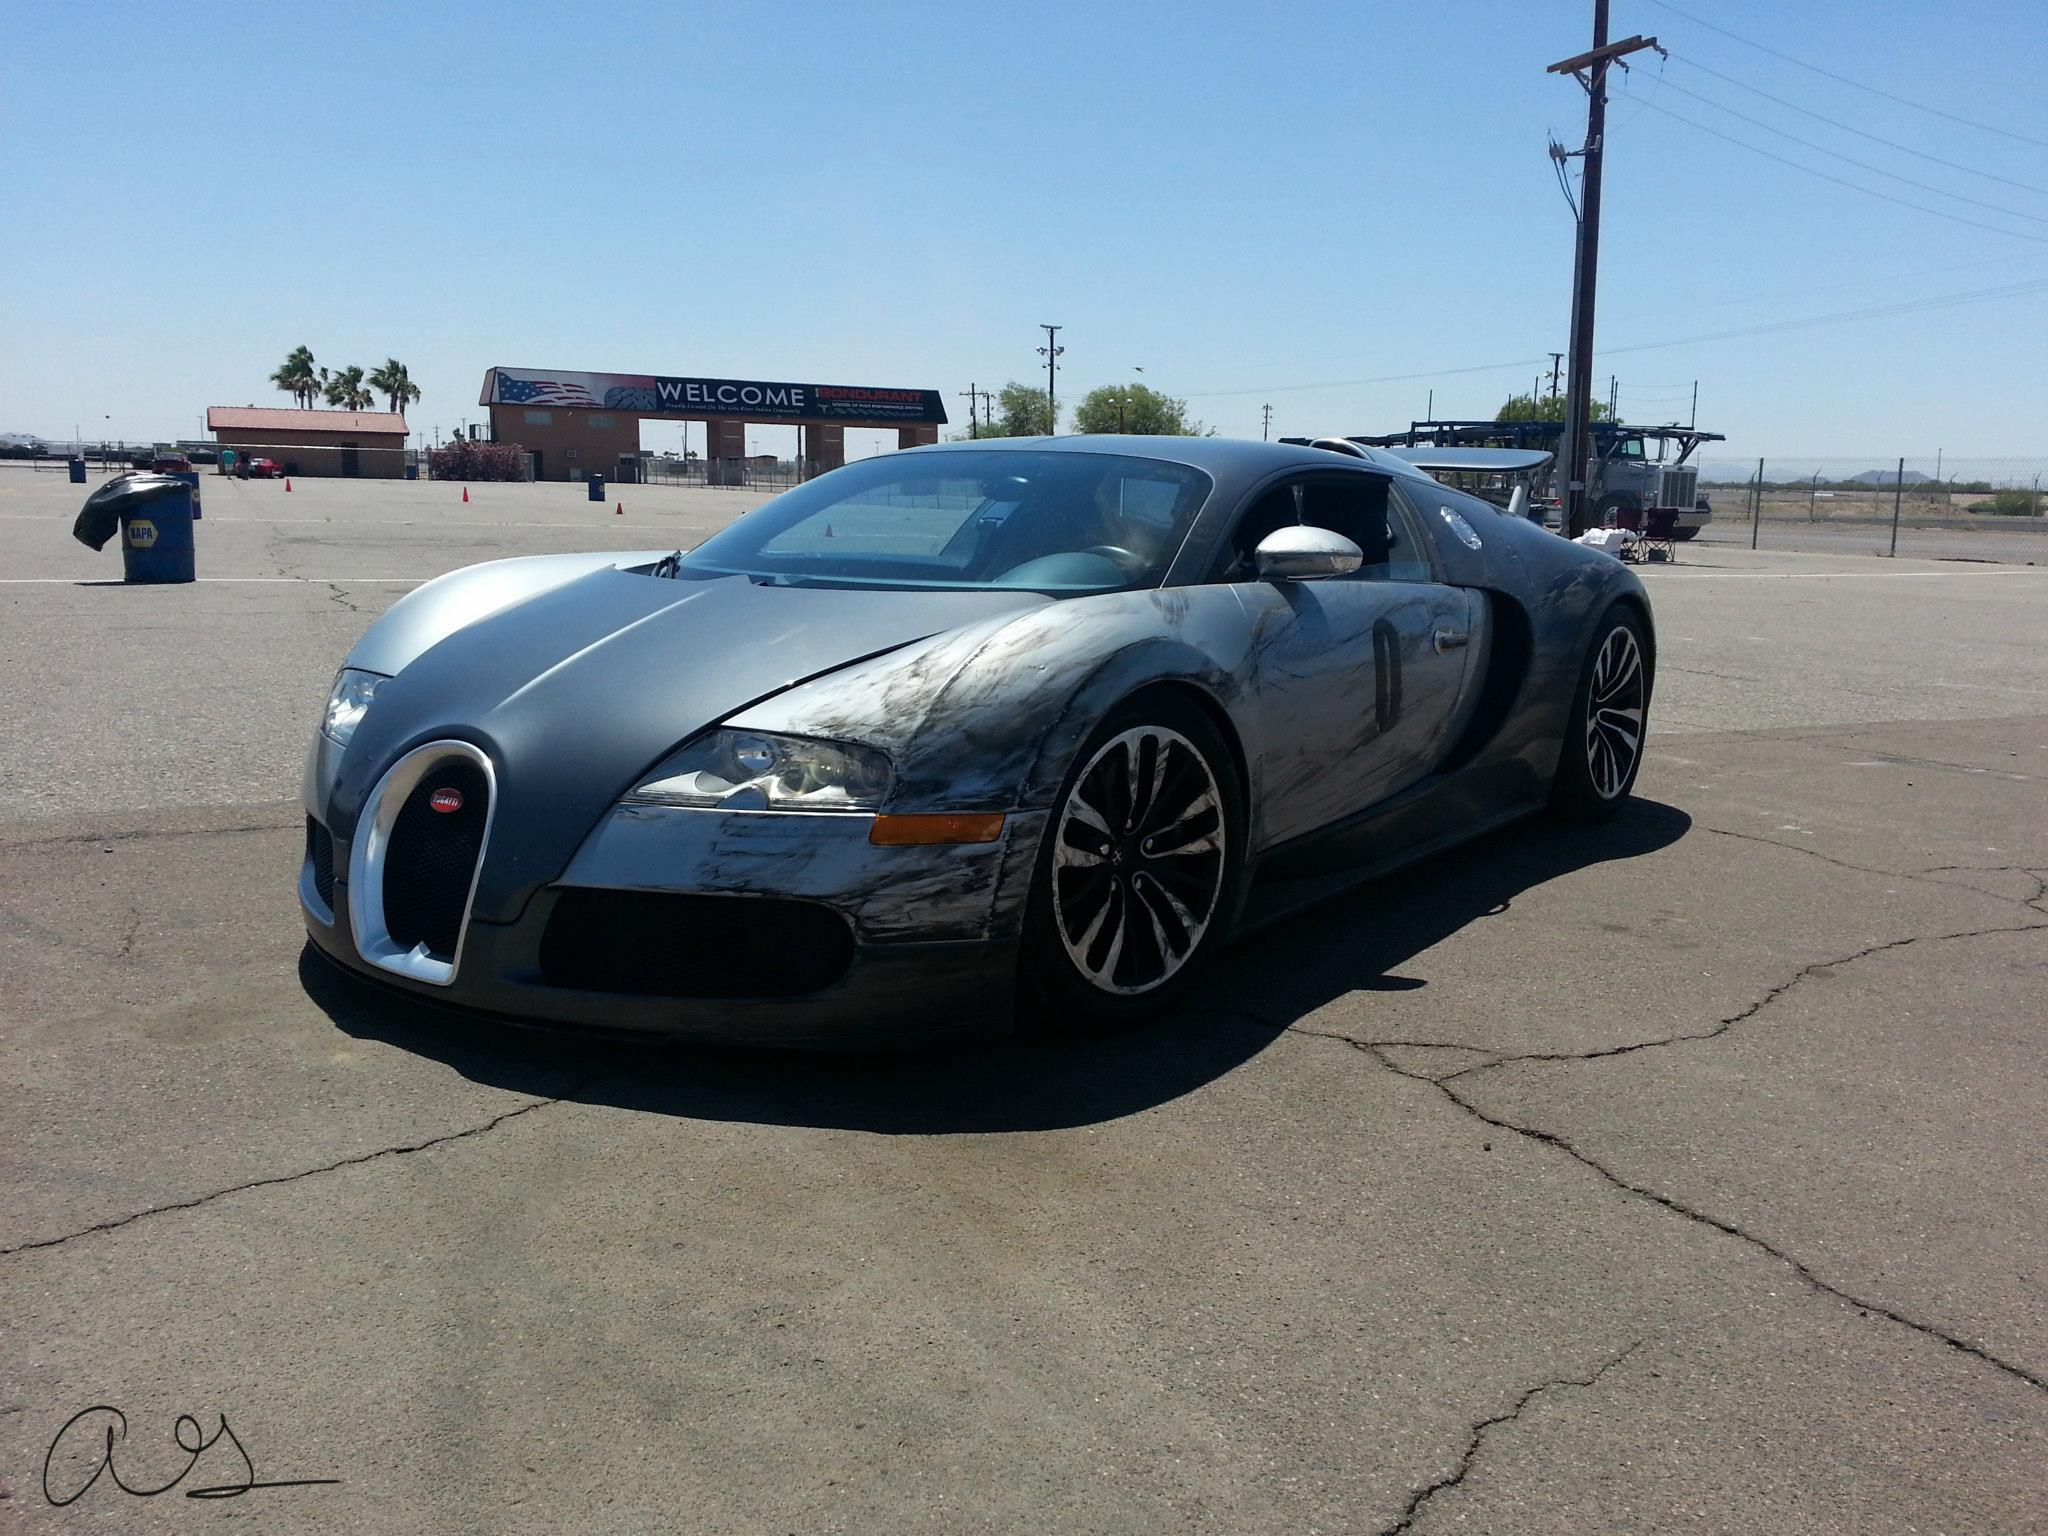 Bugatti Veyron 16.4 heeft stoeipartij met bandenstapel 